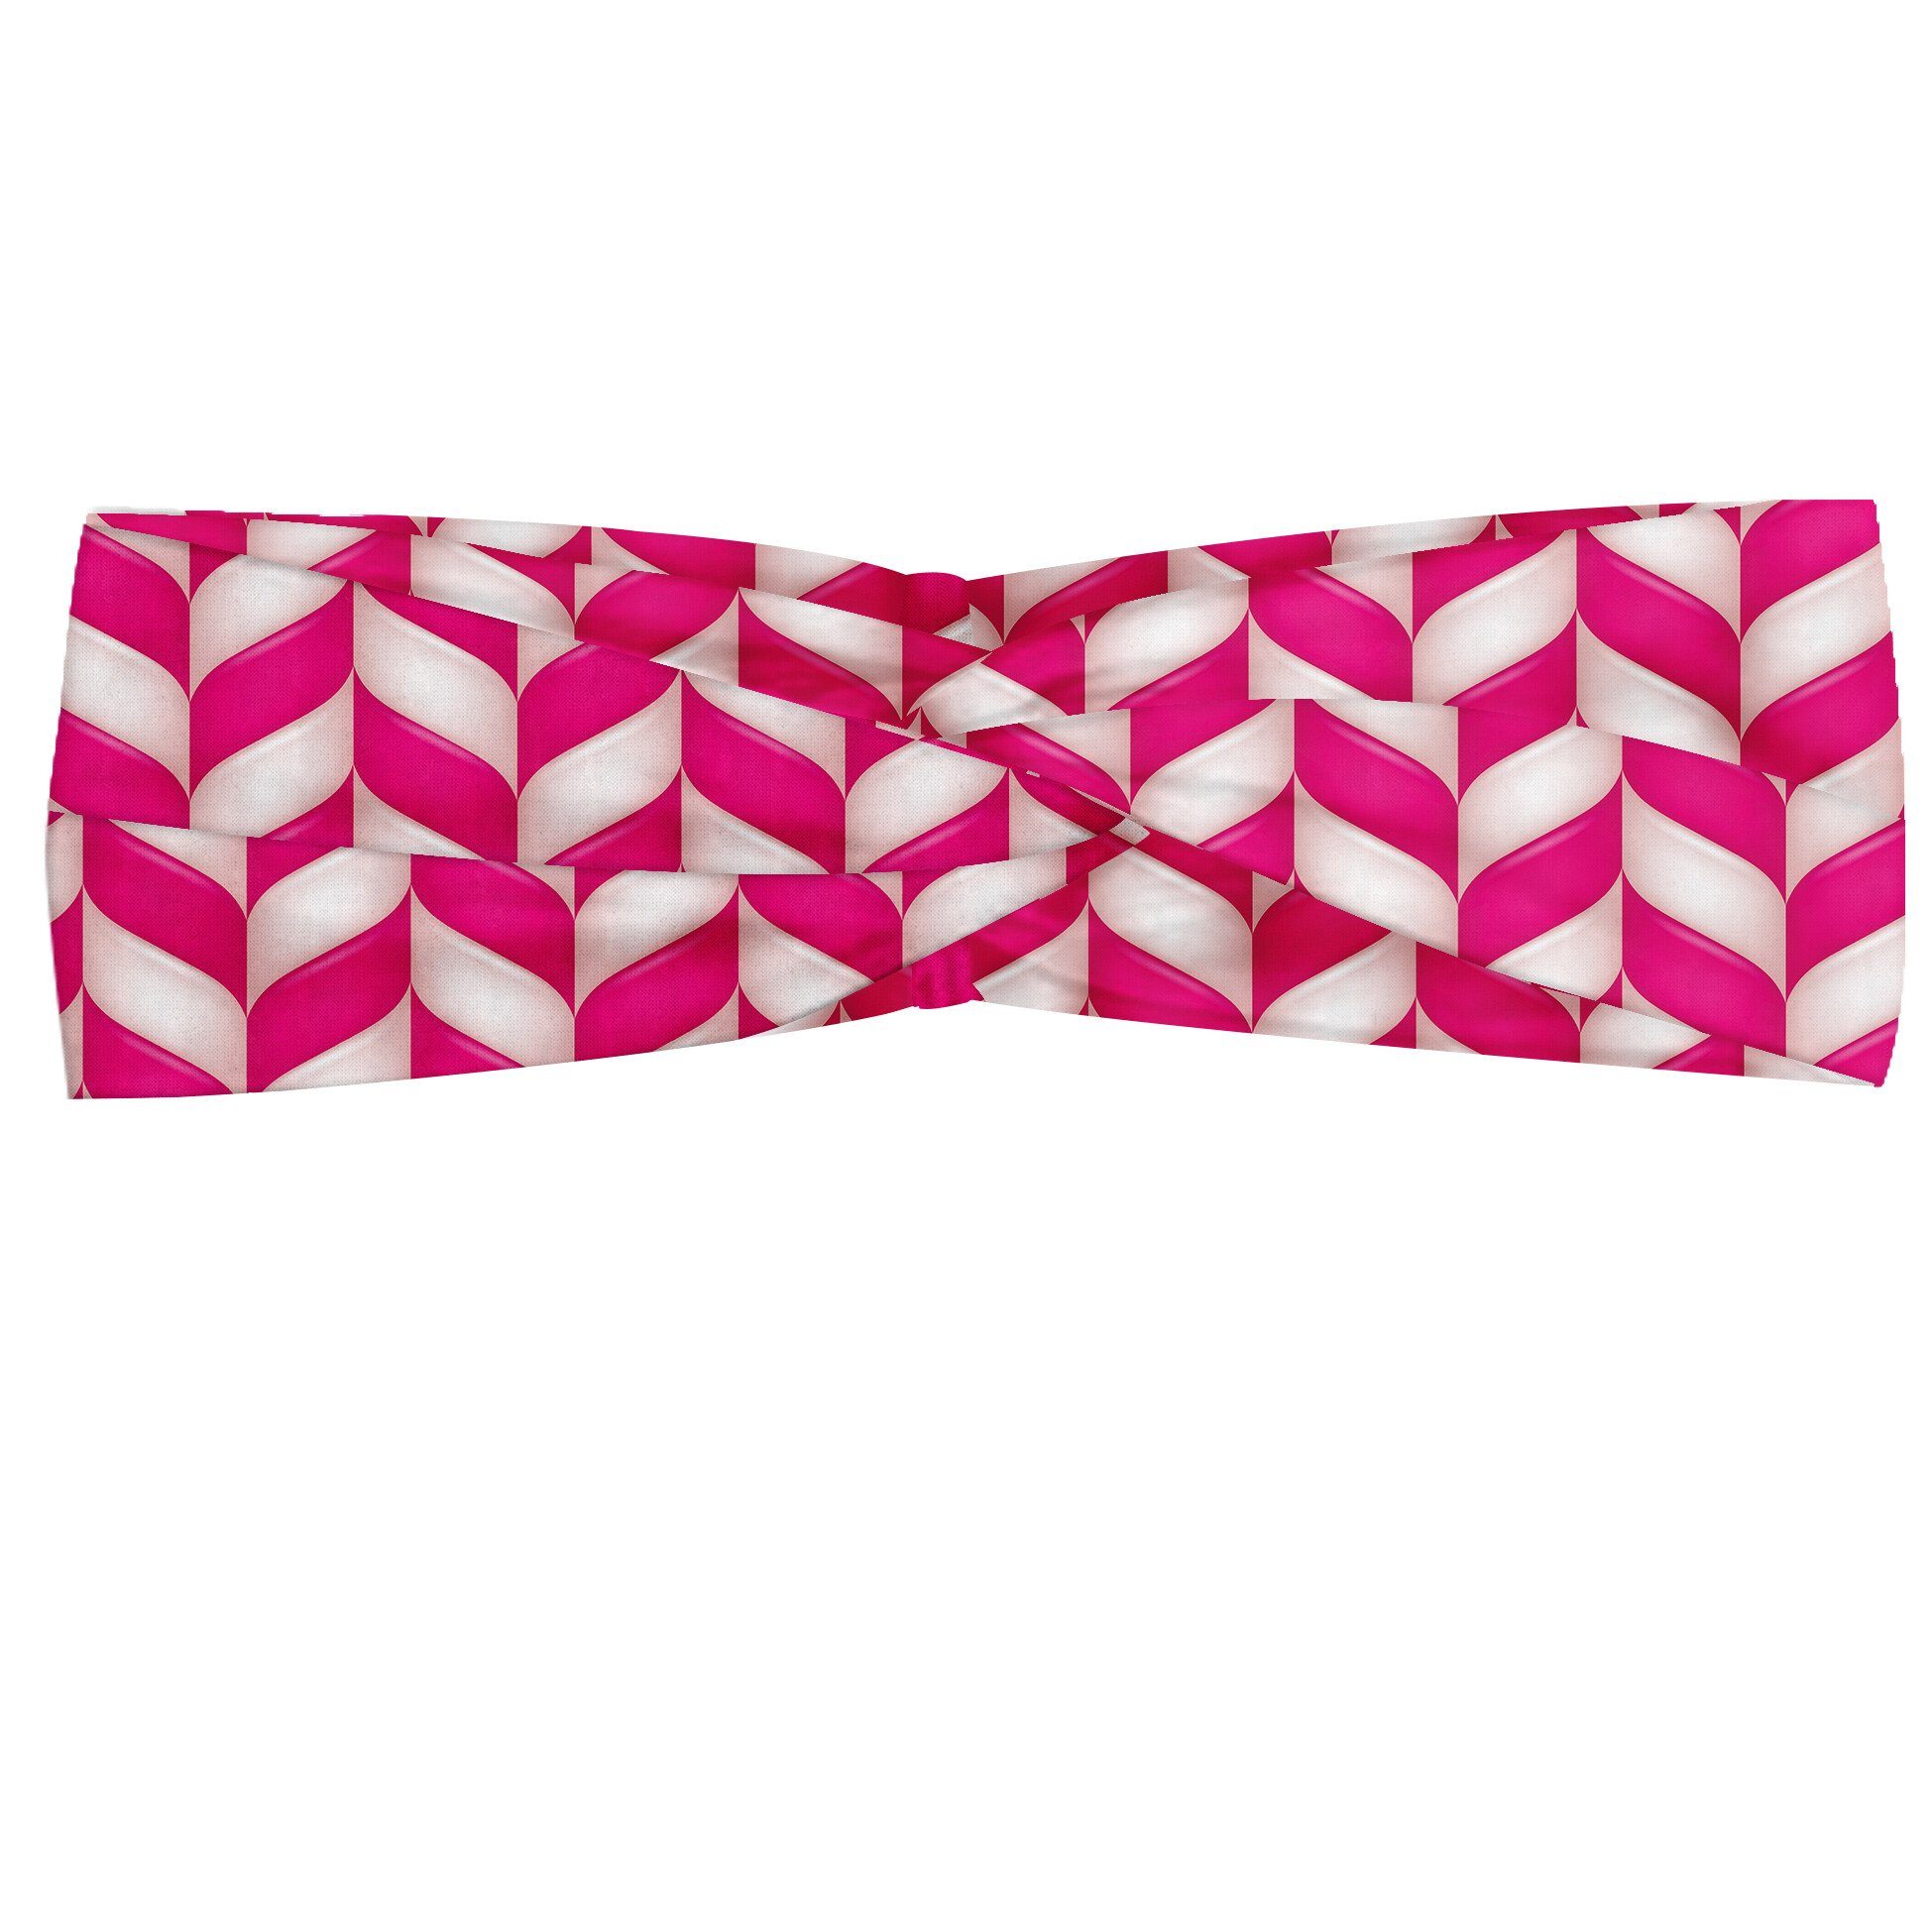 Abakuhaus Stirnband Elastisch und Angenehme alltags accessories rosa, Weiß, Vibrant gewellte Linien | Stirnbänder